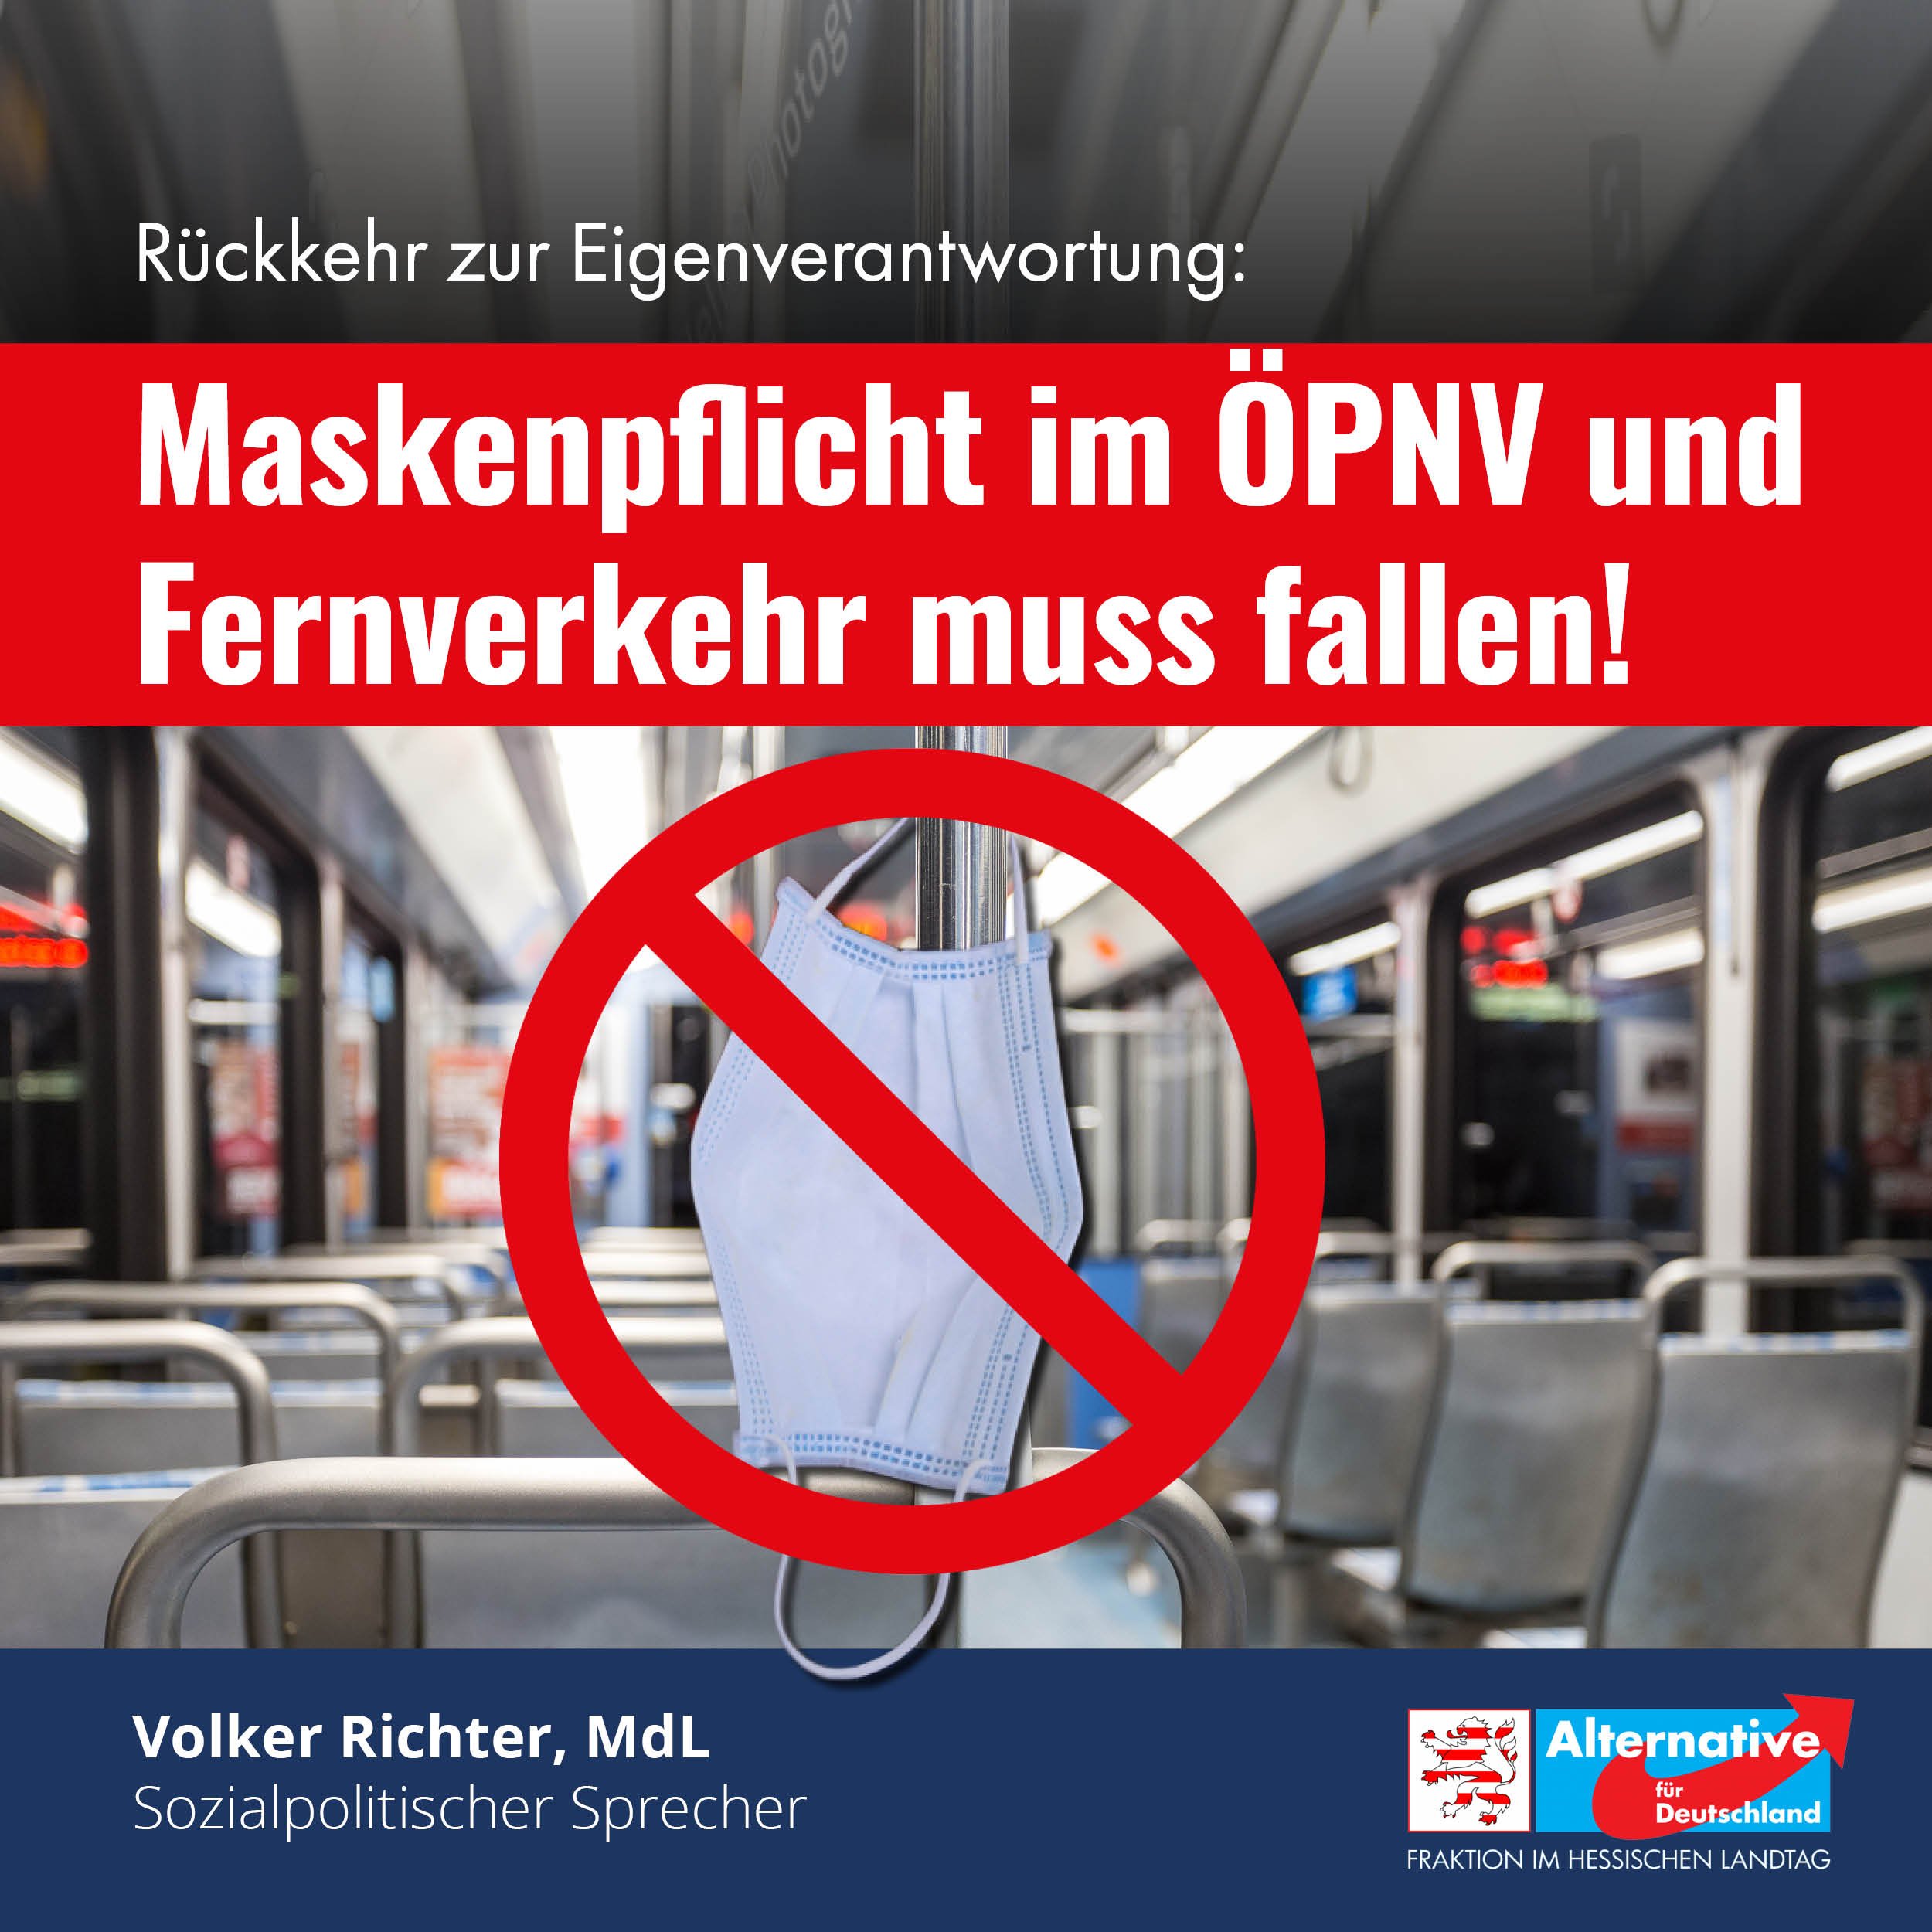 You are currently viewing Maskenpflicht im ÖPNV und Fernverkehr muss fallen